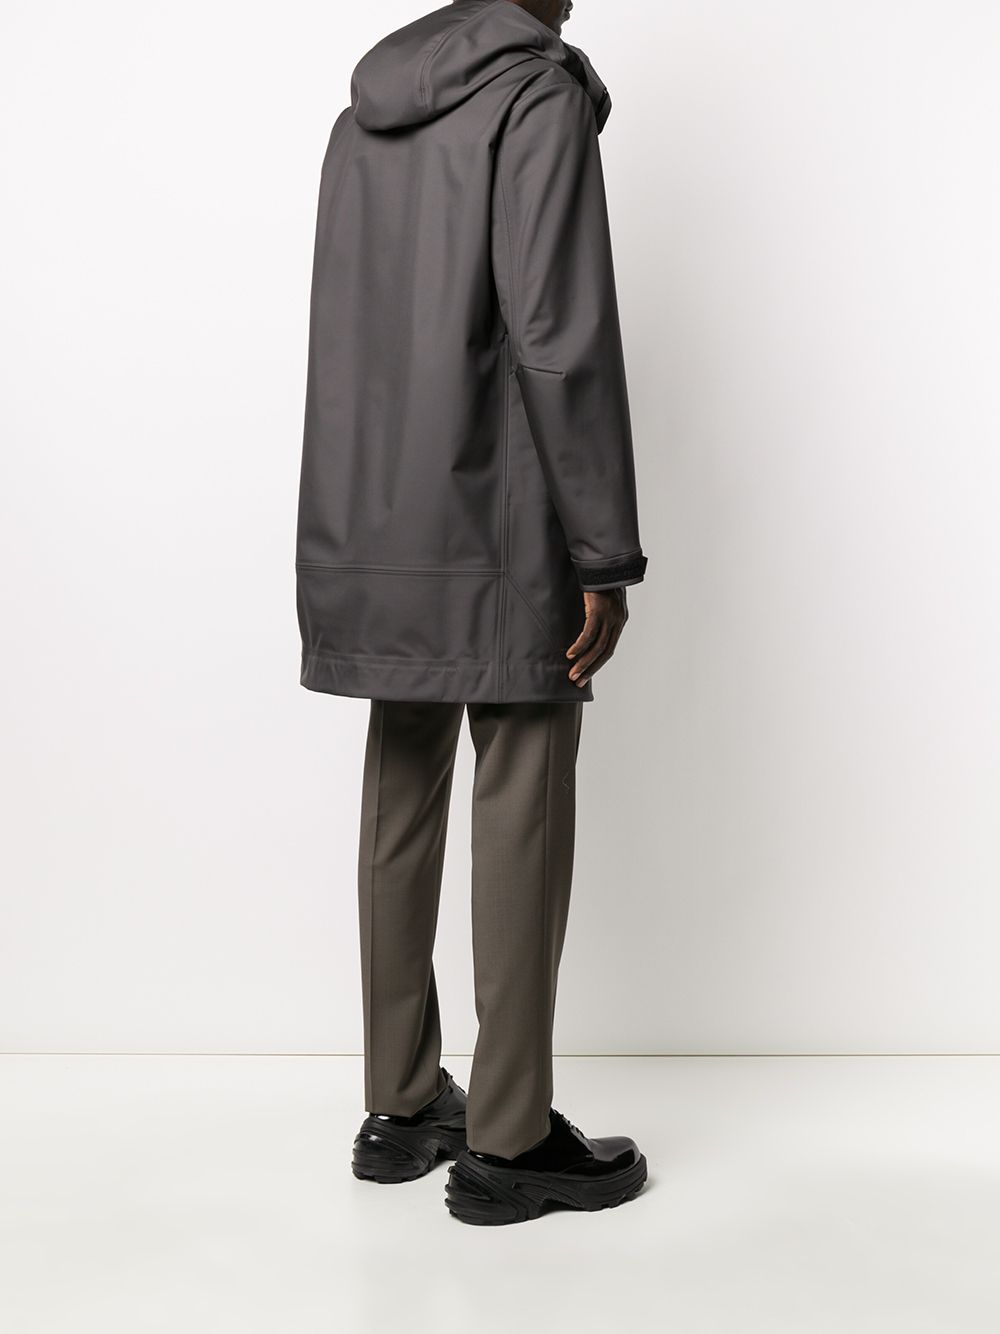 фото Bottega veneta пальто с капюшоном